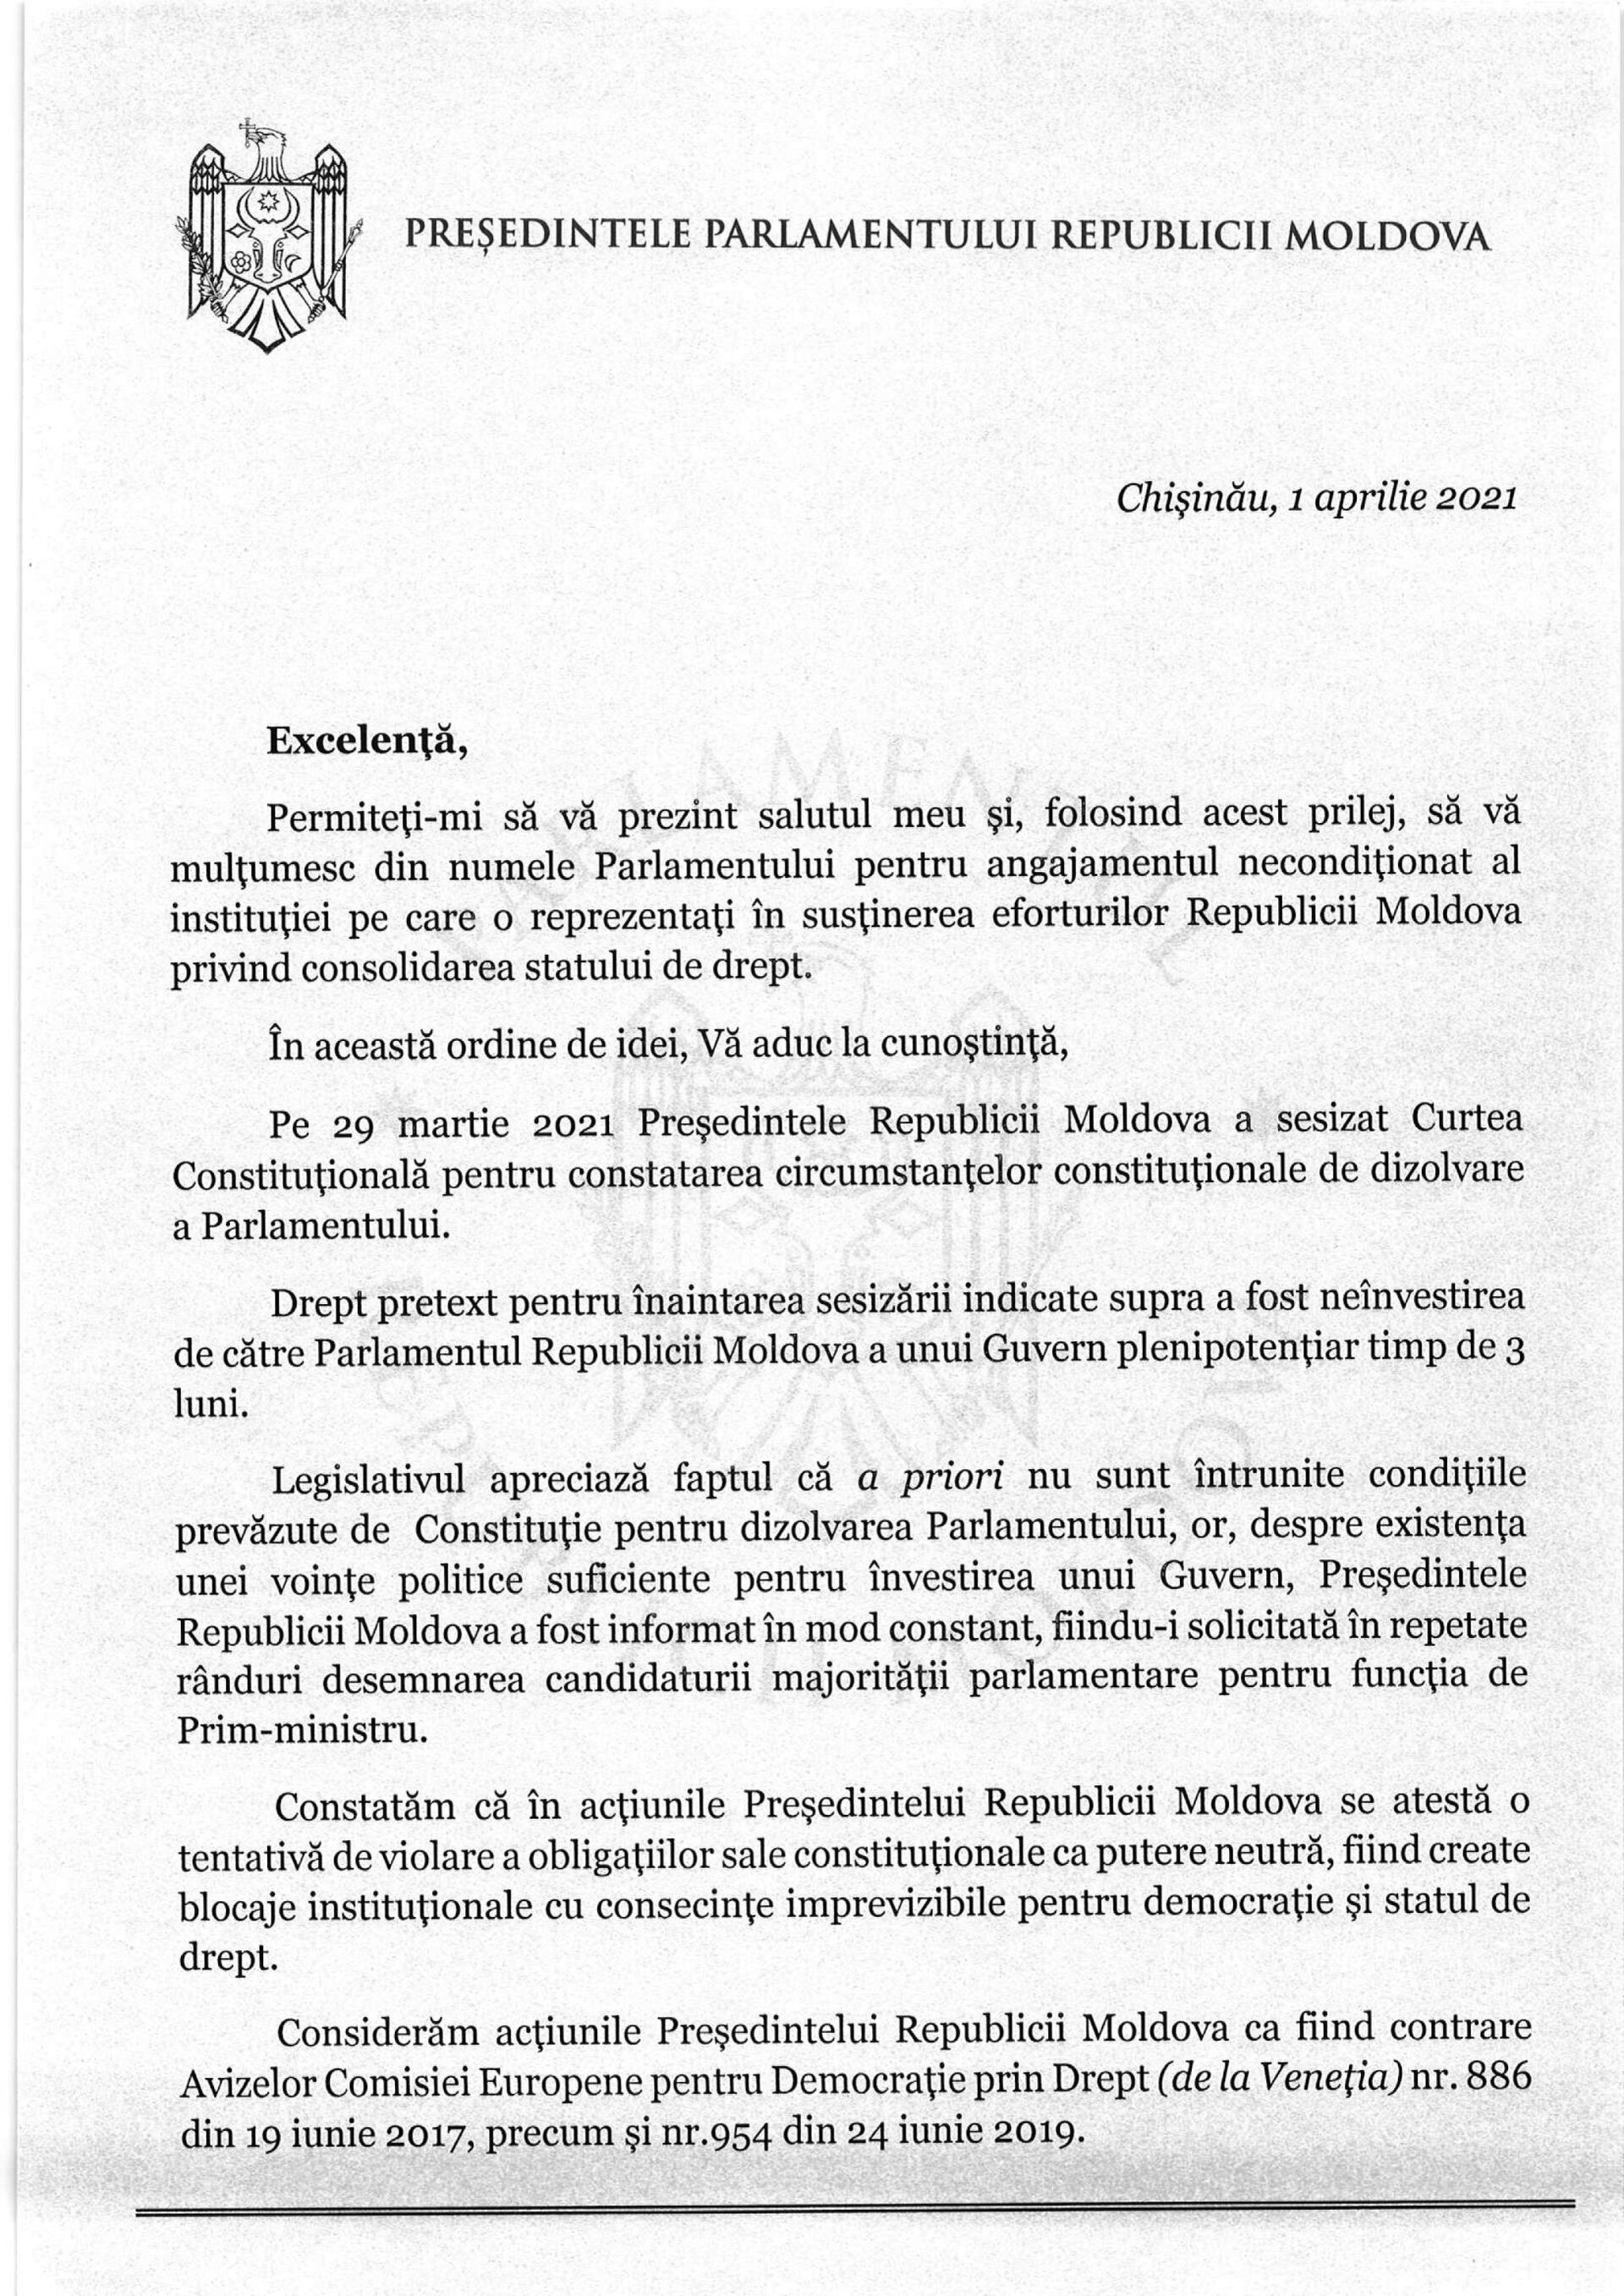 Zinaida Greceanîi, apel către Consiliul Europei cu privire la acțiunile Maiei Sandu - Sputnik Moldova, 1920, 05.04.2021